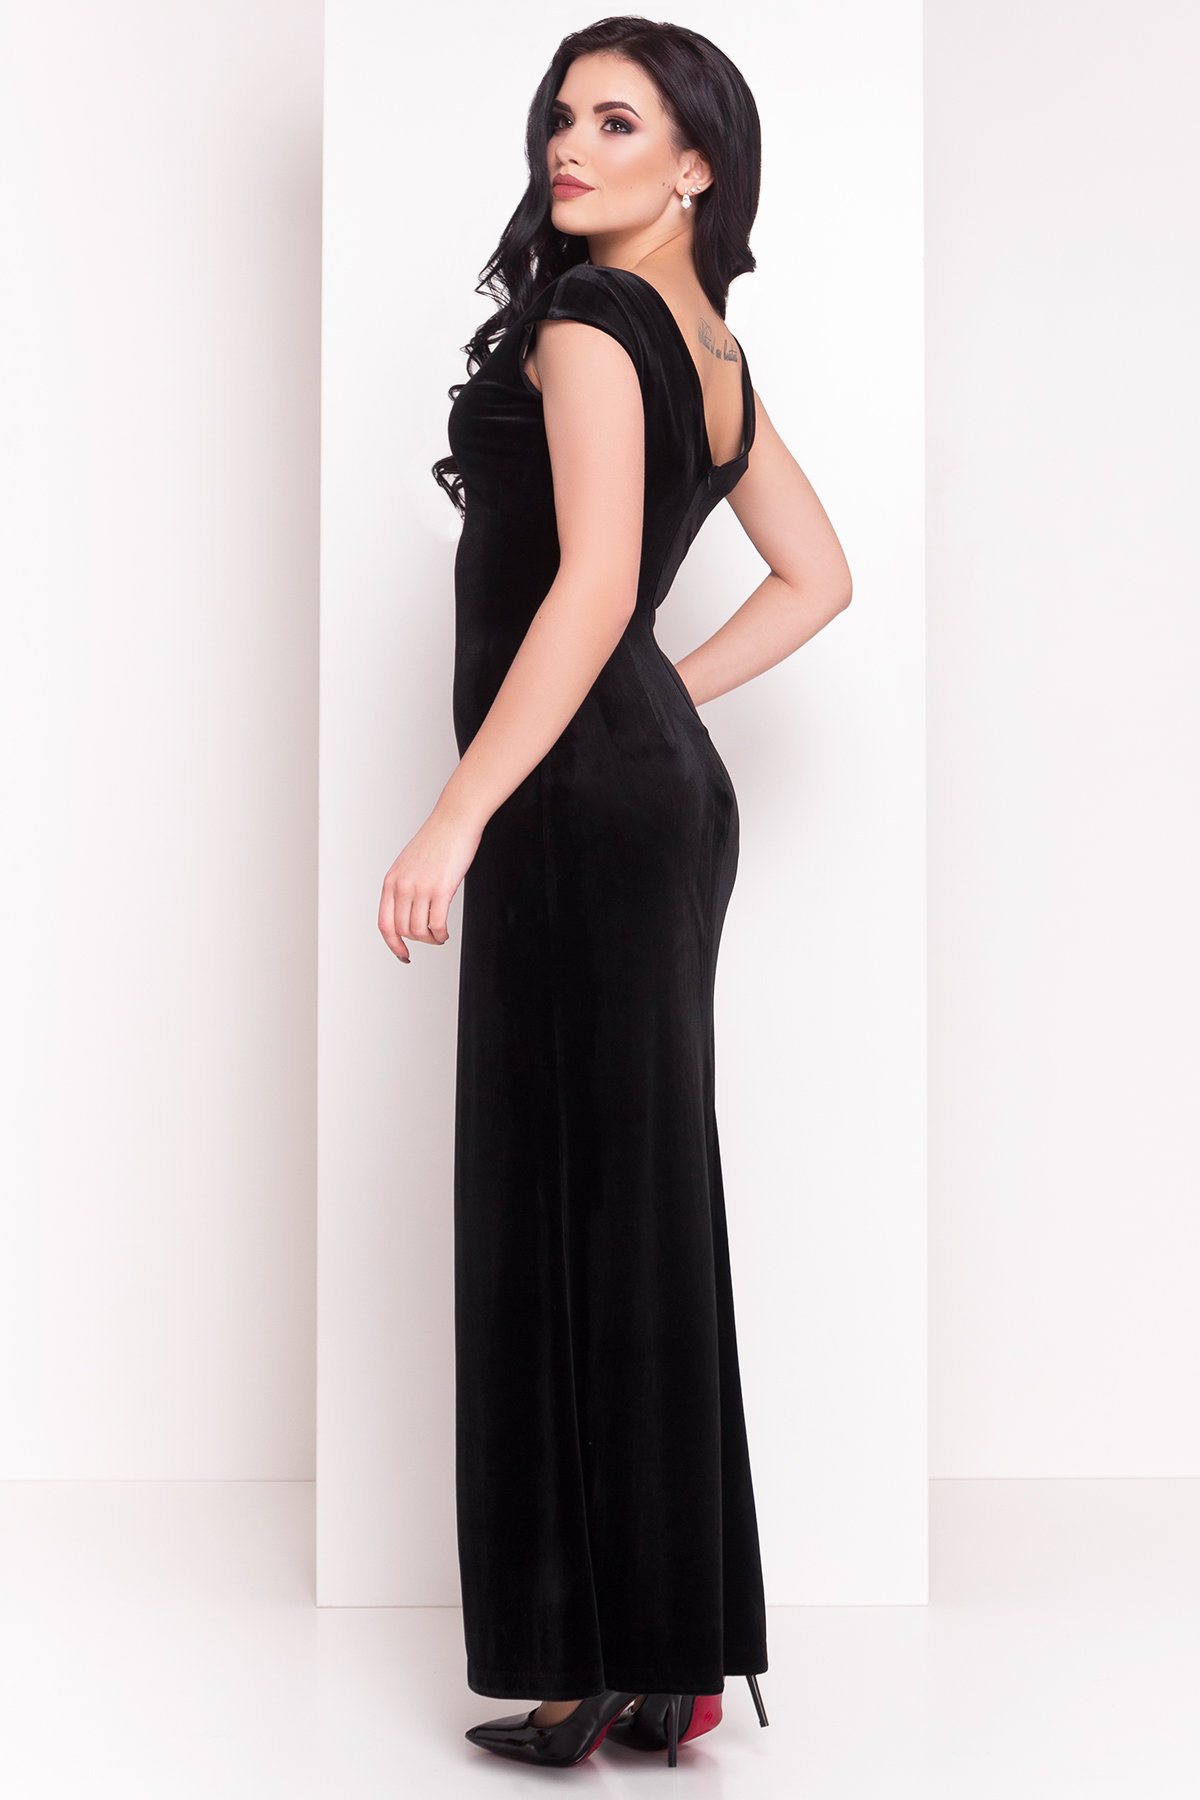 Платье Агата 4315 АРТ. 21069 Цвет: Черный - фото 3, интернет магазин tm-modus.ru